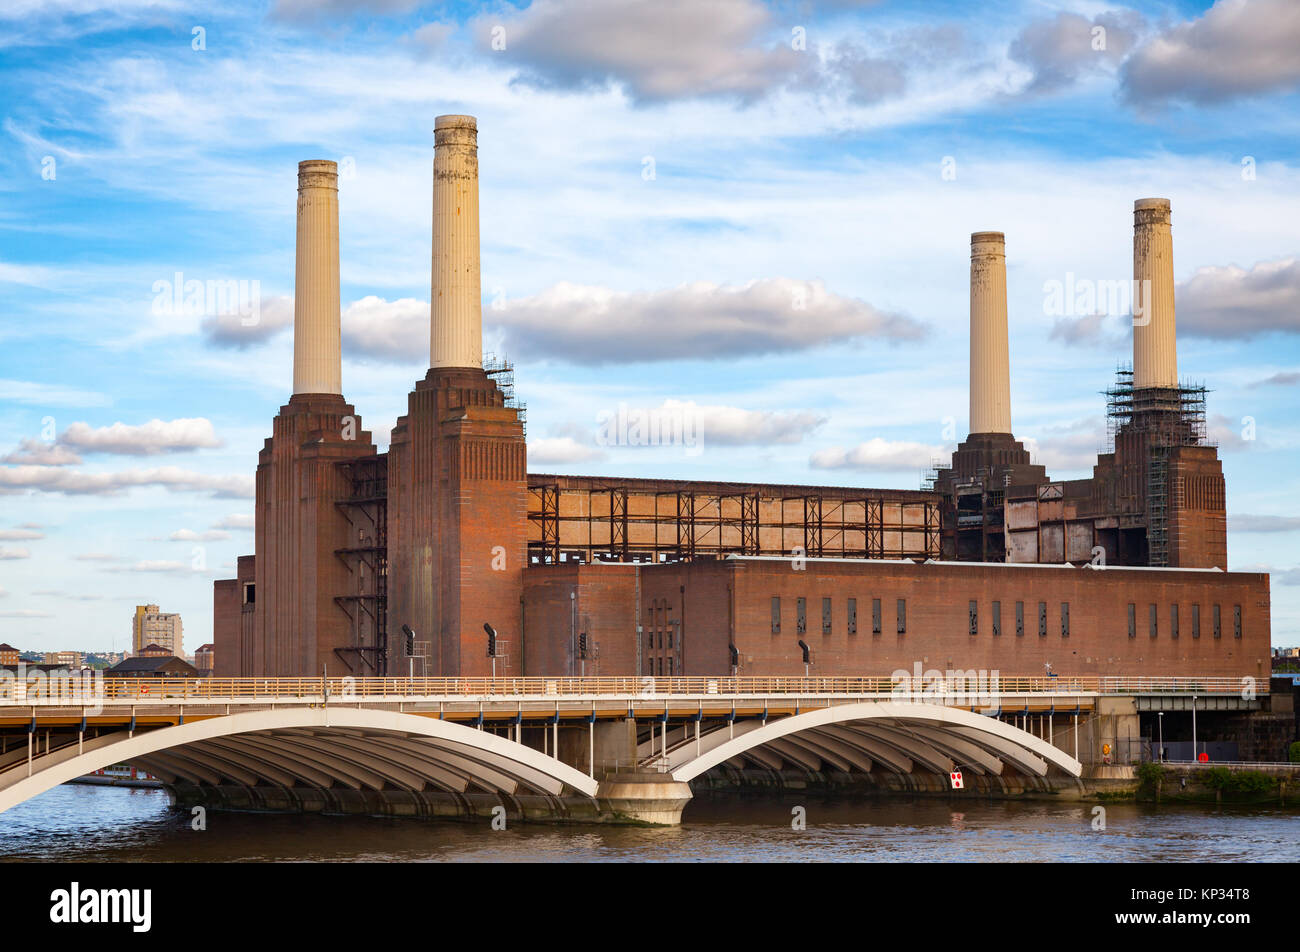 Inquadratura storica di smantellare una centrale a carbone Battersea Power Station, situato sulla riva sud del fiume Tamigi nel Sud Ovest di Londra, Inghilterra e Foto Stock